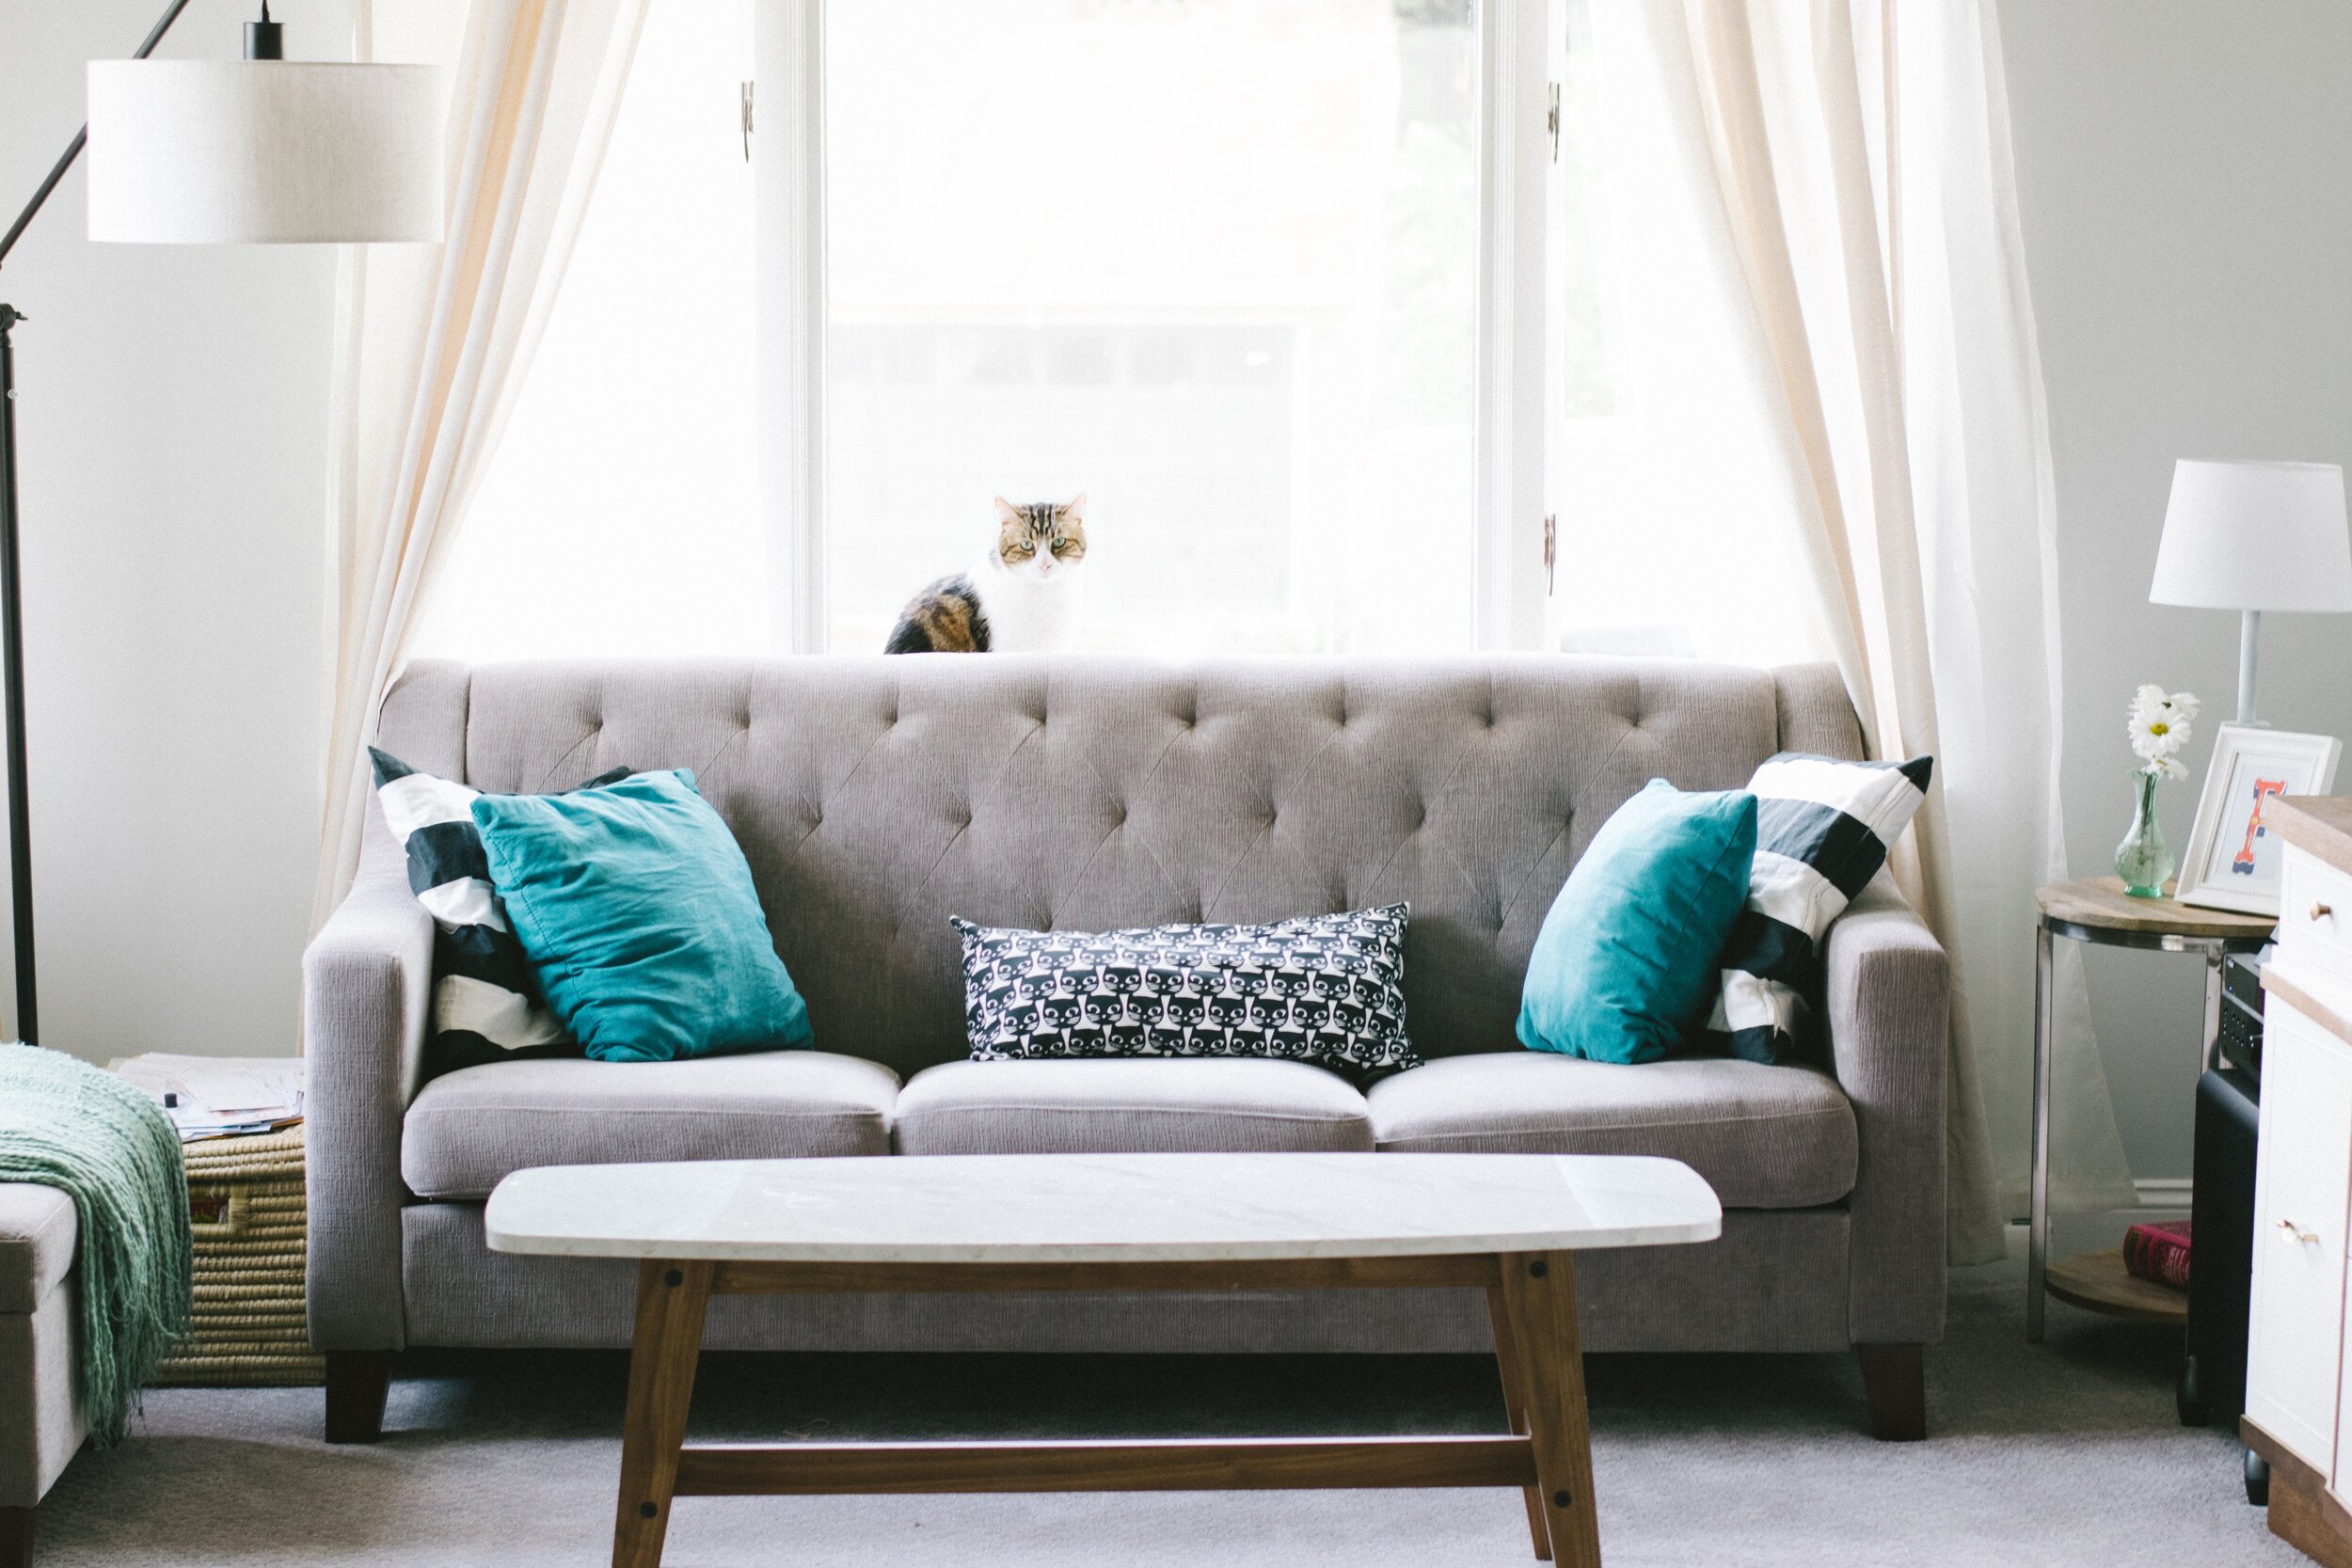 Sofa Reupholstered